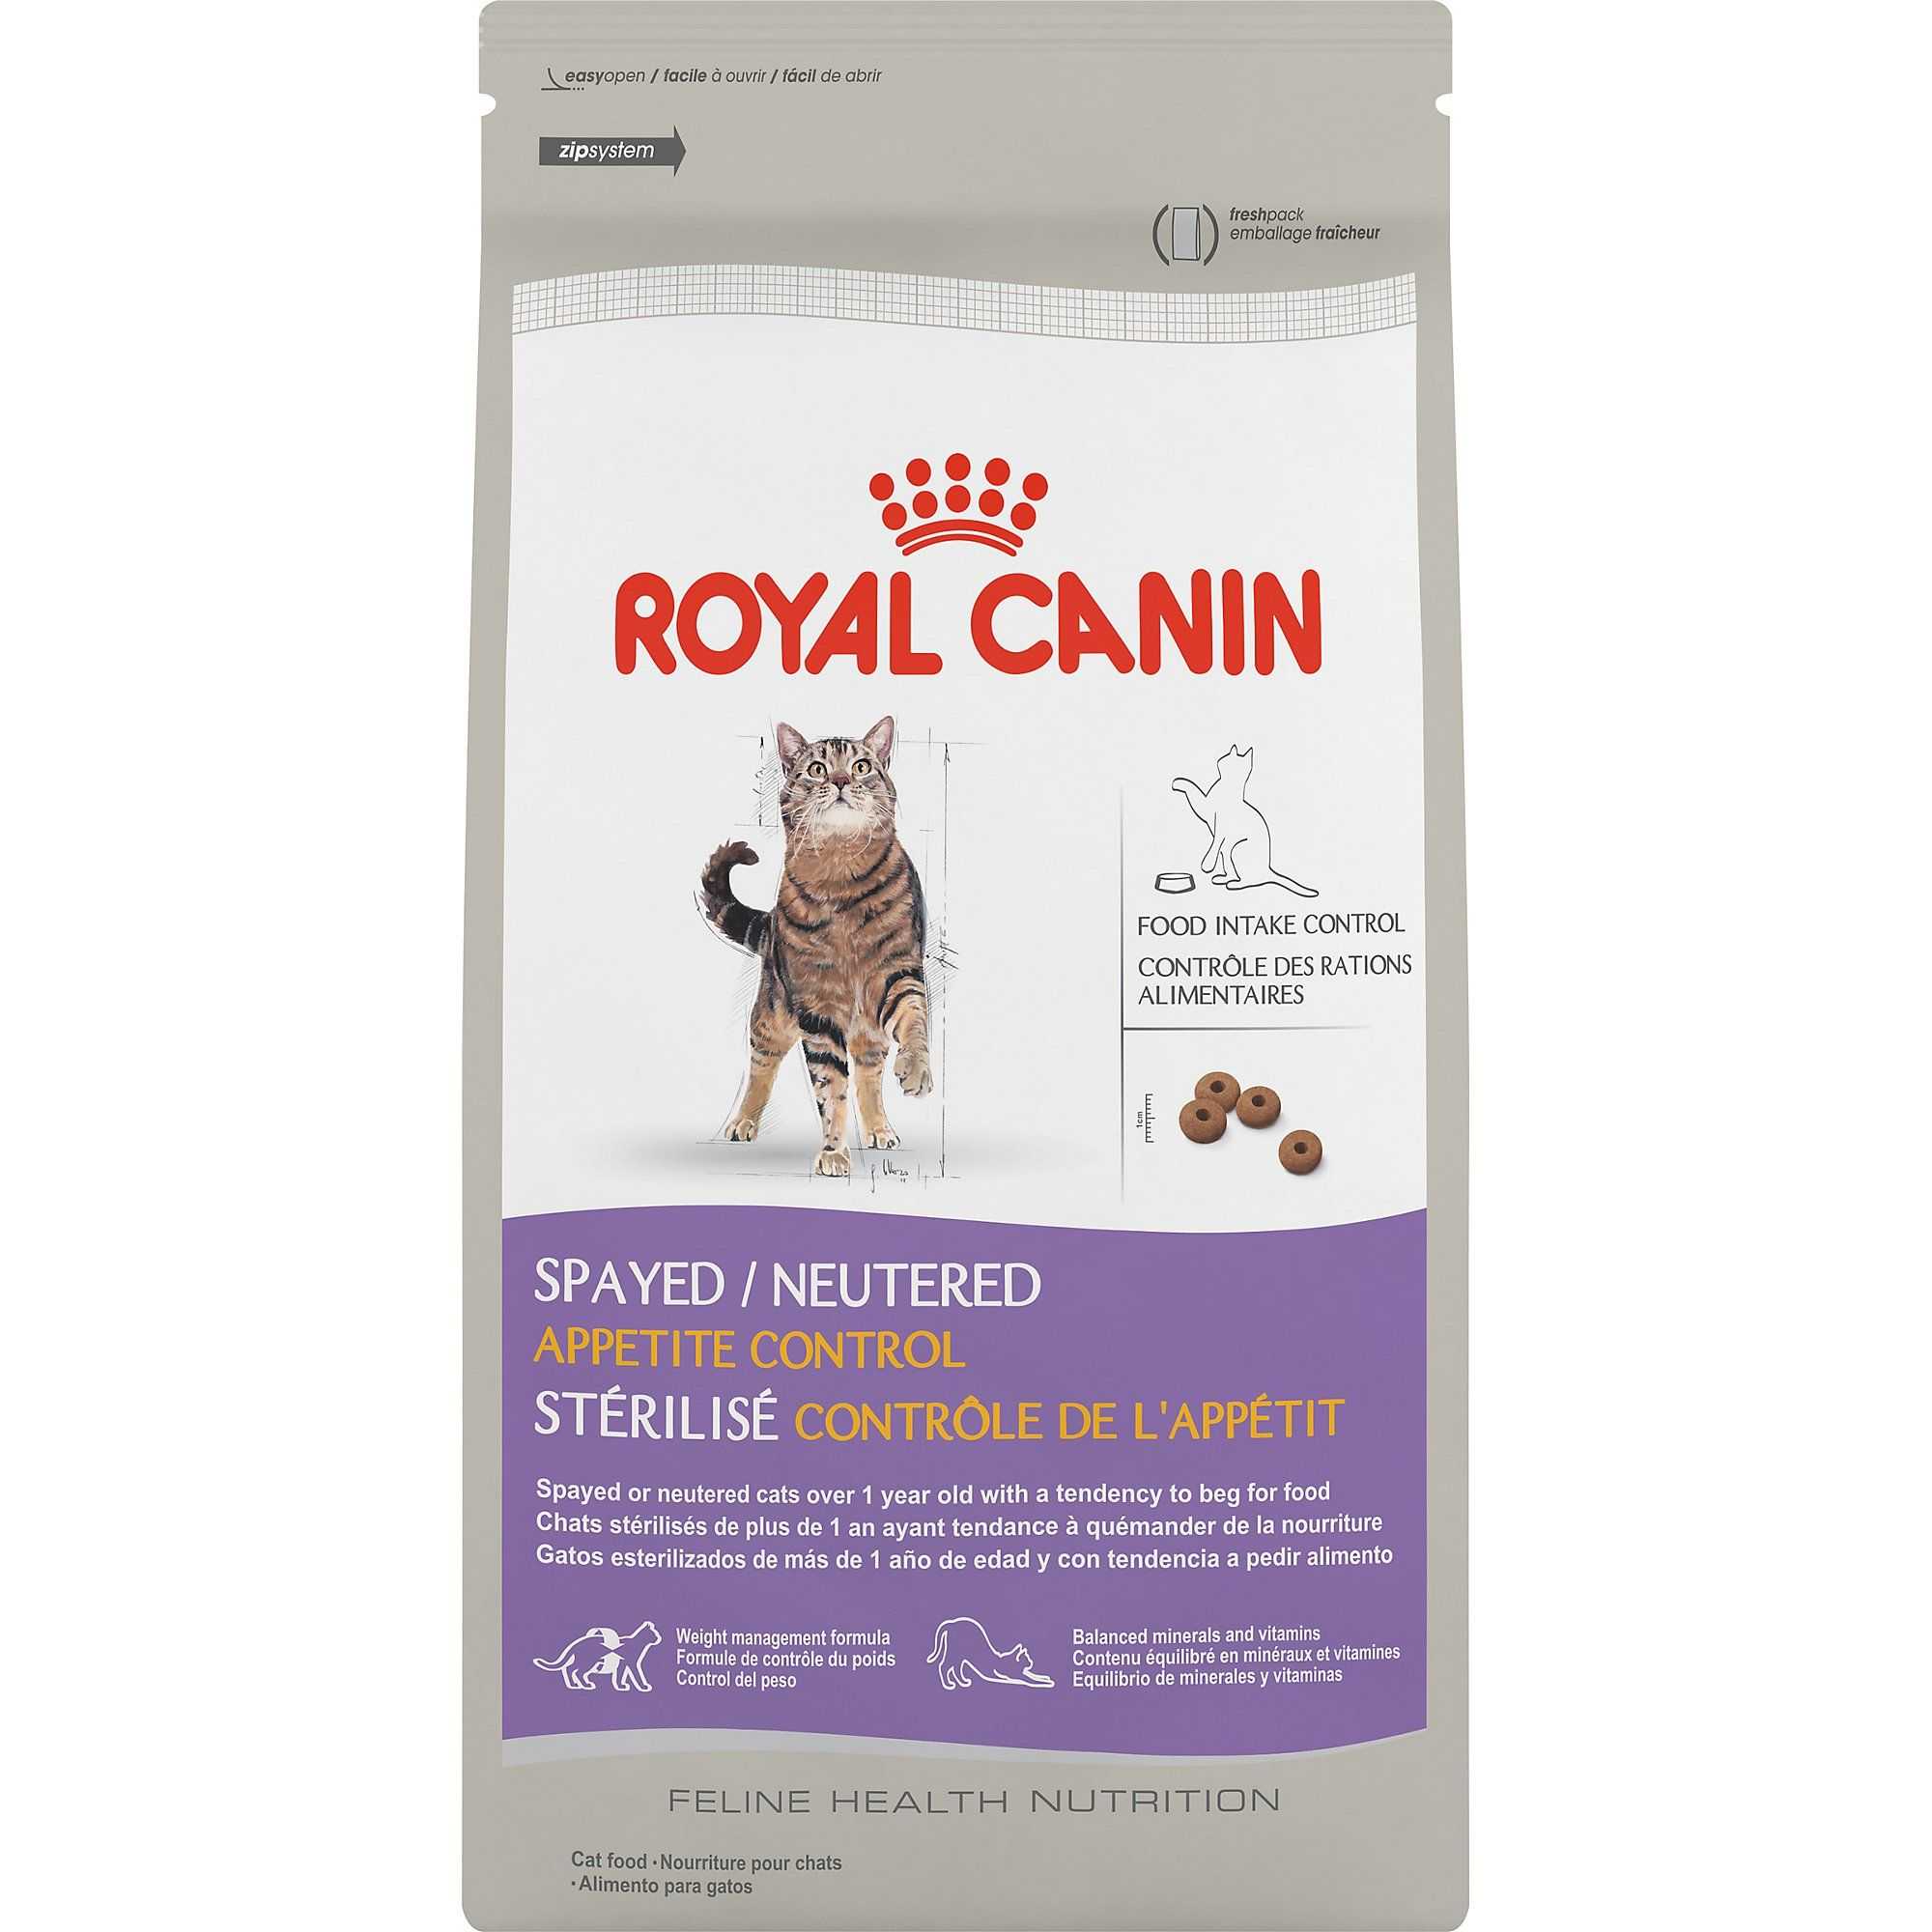 Обзор кормов для кошек роял канин (royal canin)